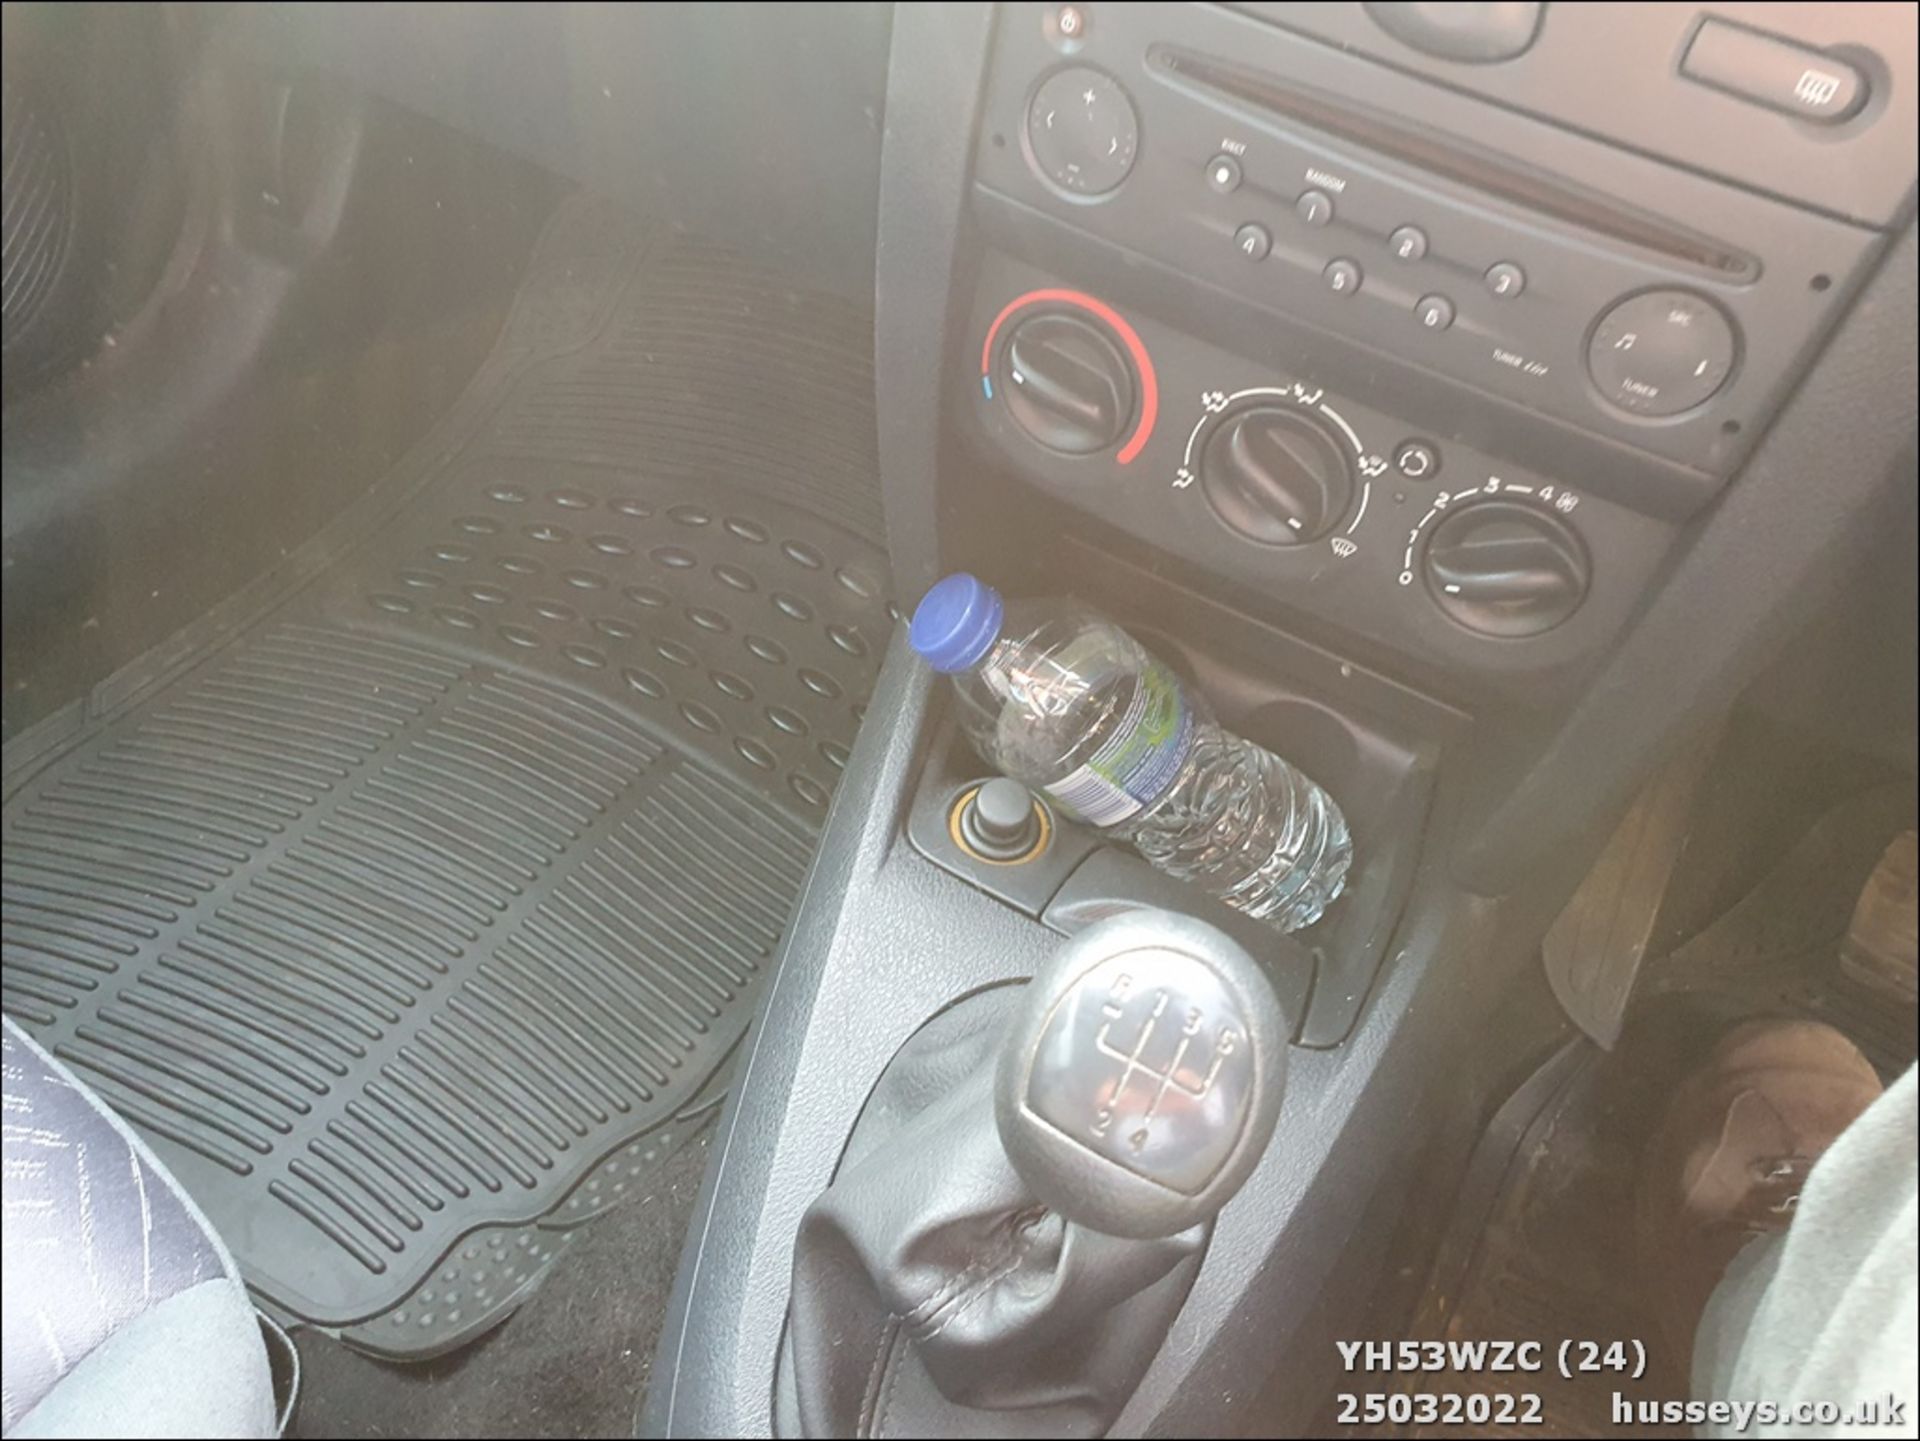 04/53 RENAULT CLIO DYNAMIQUE 16V - 1149cc 3dr Hatchback (Black, 90k) - Image 25 of 29